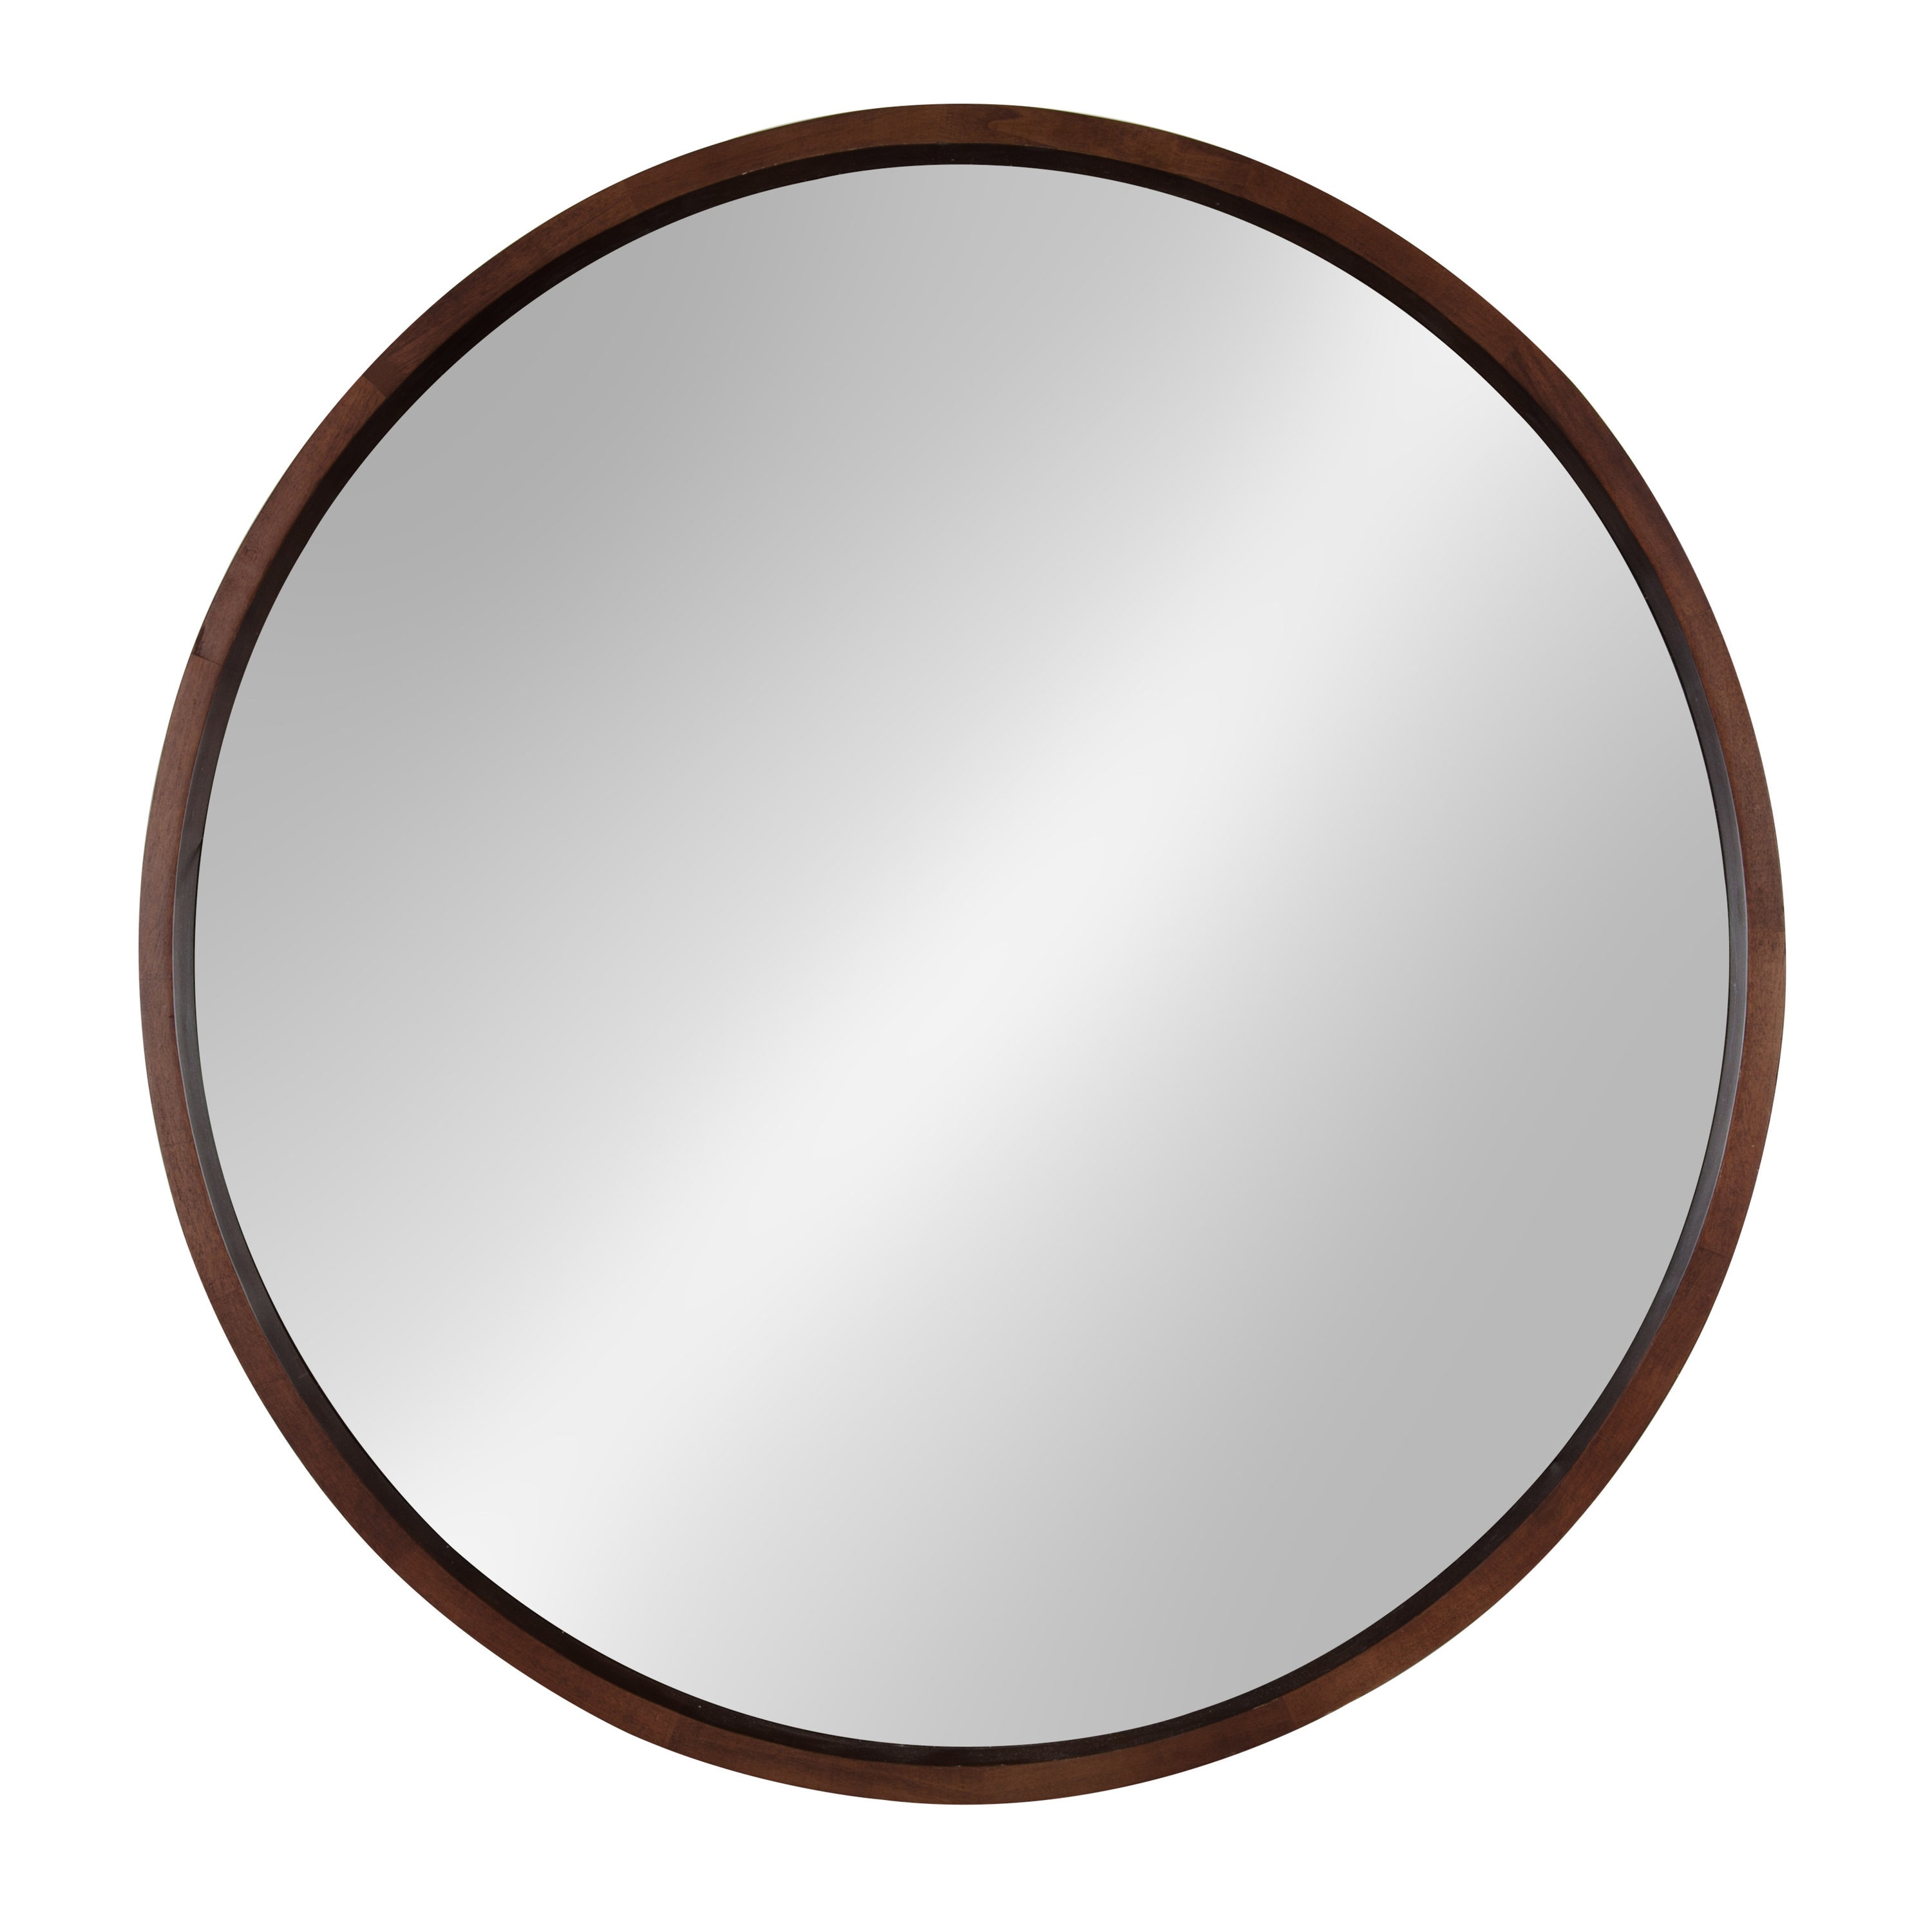 Mirrorize IMP6764CT 30 inch x 30 inch Walnut Brown Round Mirror